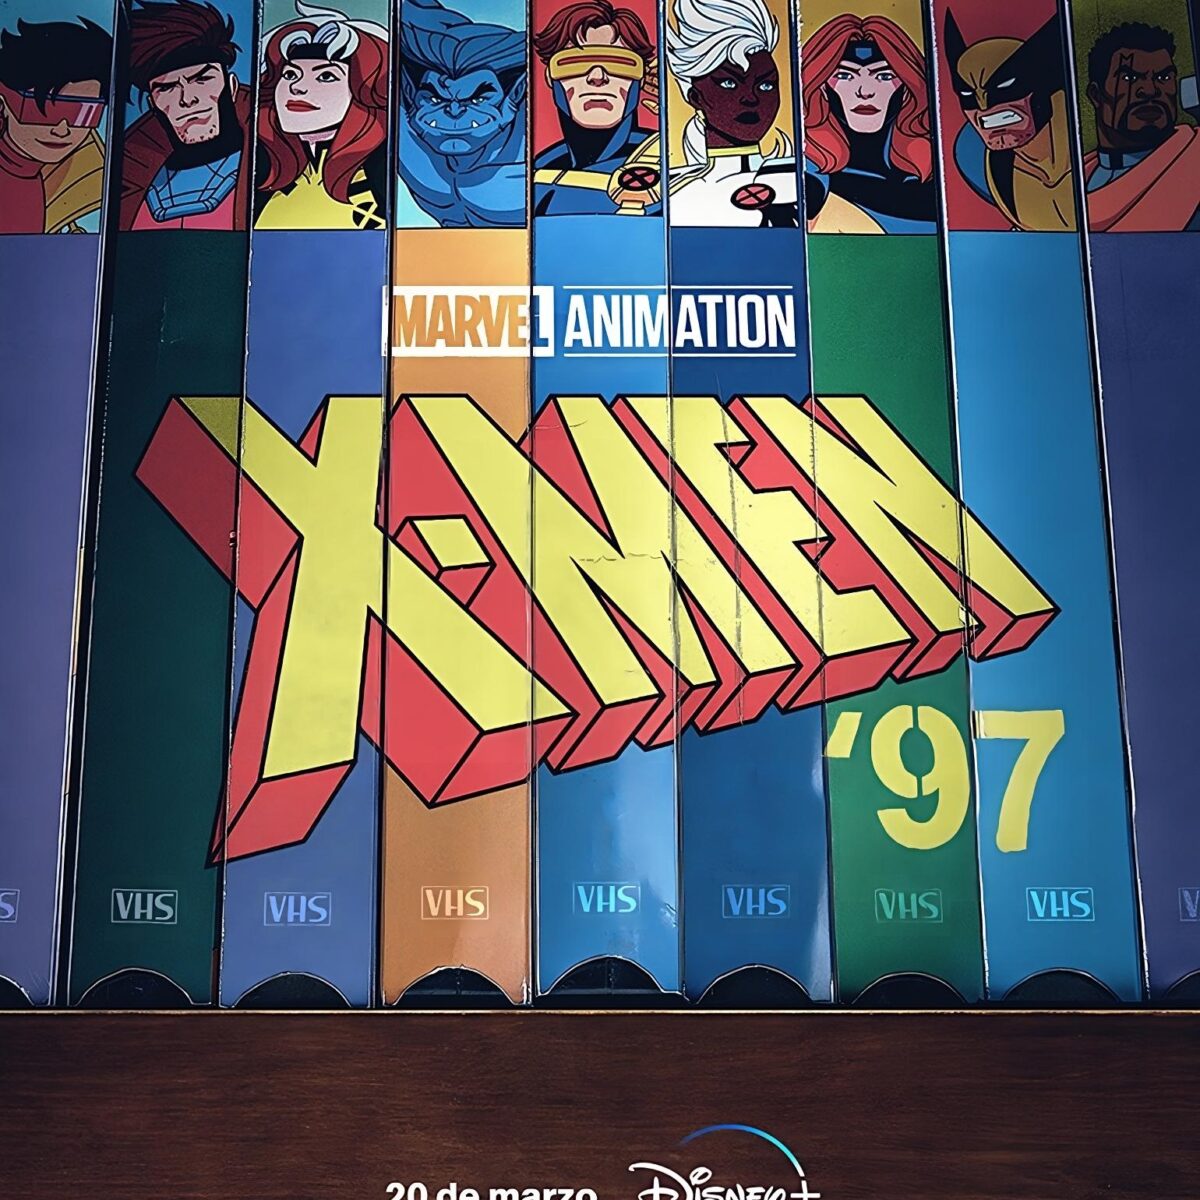 Marvel animation presenta X-Men ’97: una nueva era de héroes animados